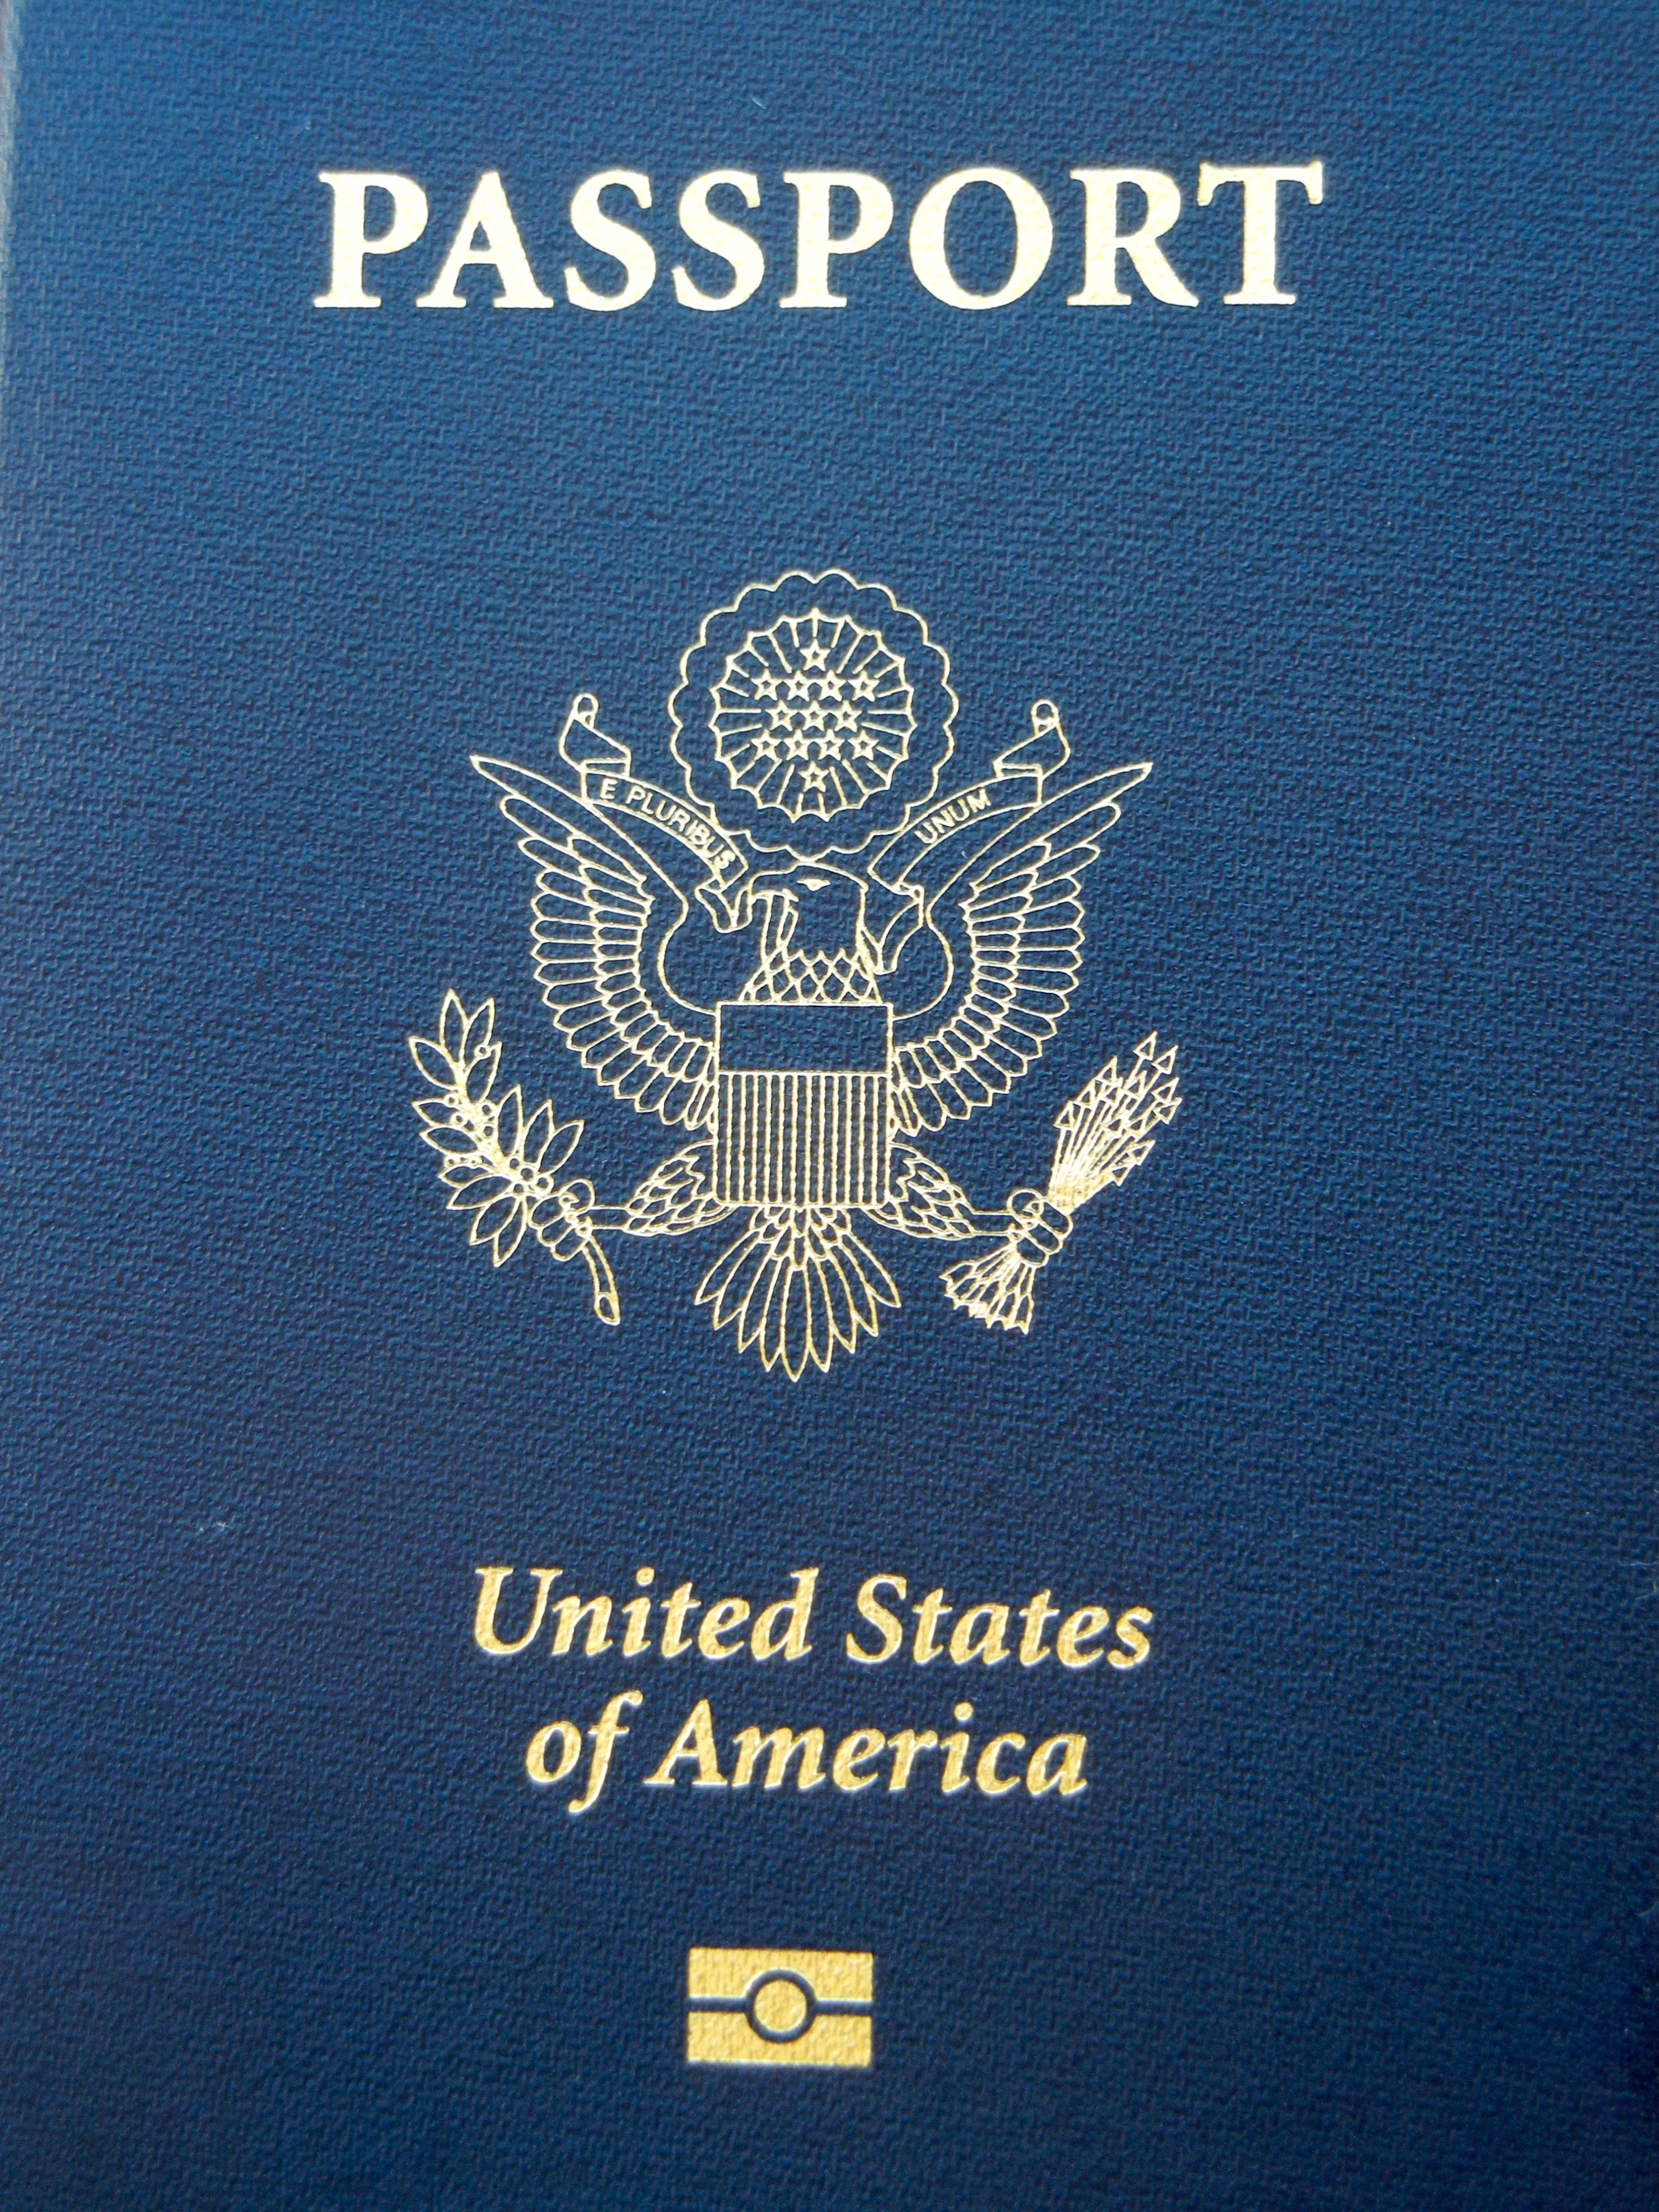 Passport
